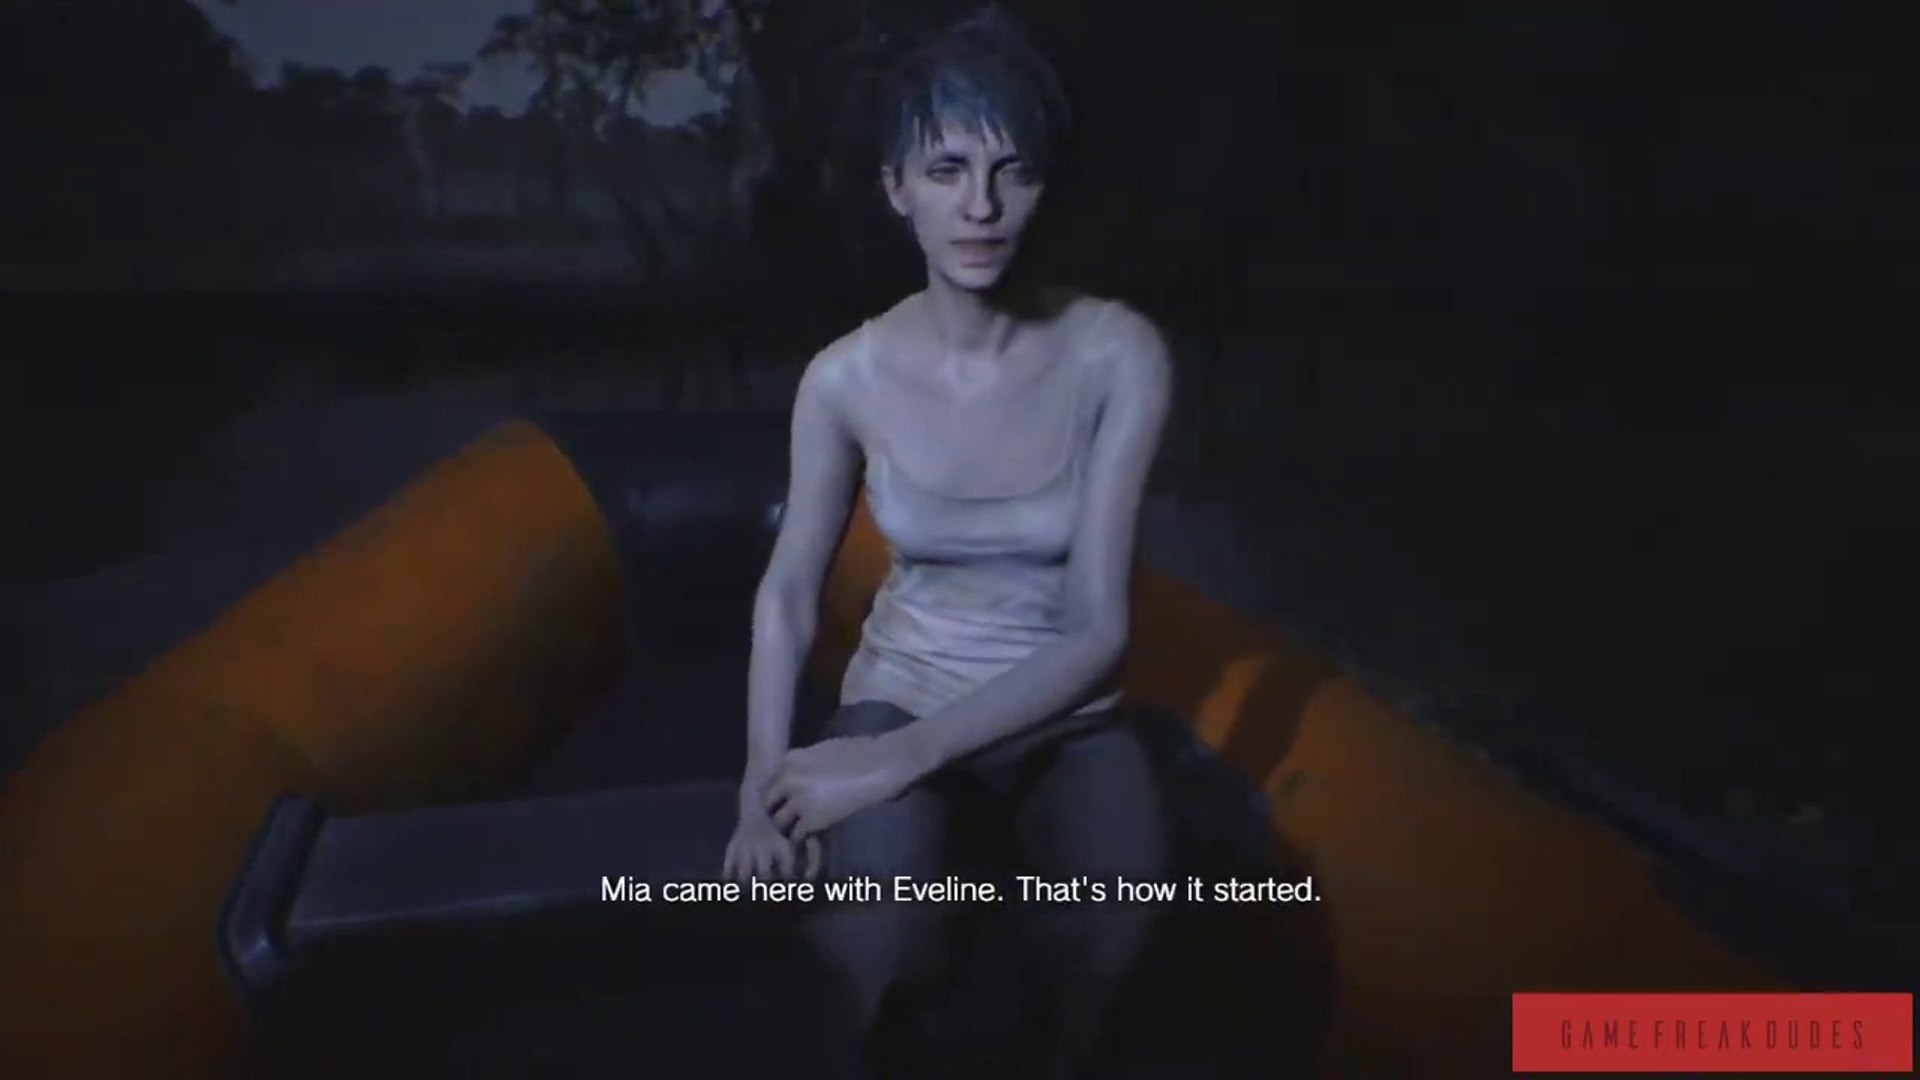 Zoe Resident Evil